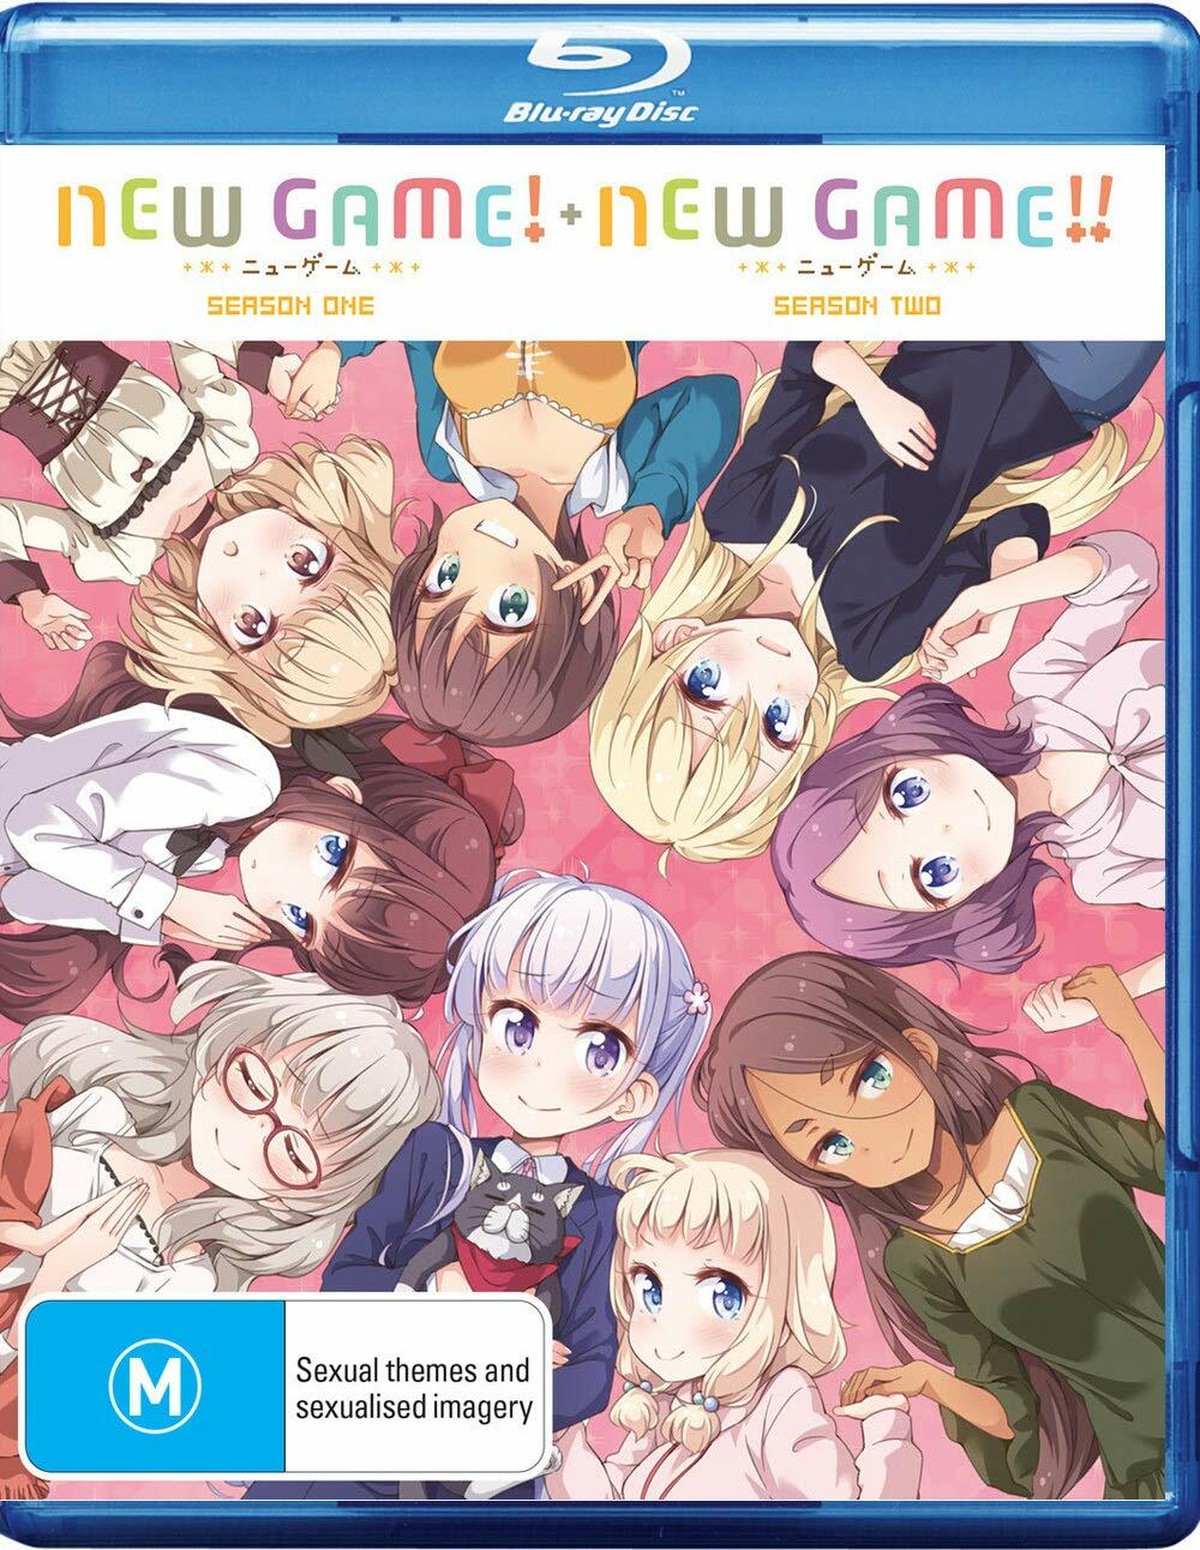 北米版 New Game New Game ニューゲーム 第1 2期 全24話セット コンプリートシリーズ Dvd Blu Ray コンボパック Perch Media Store